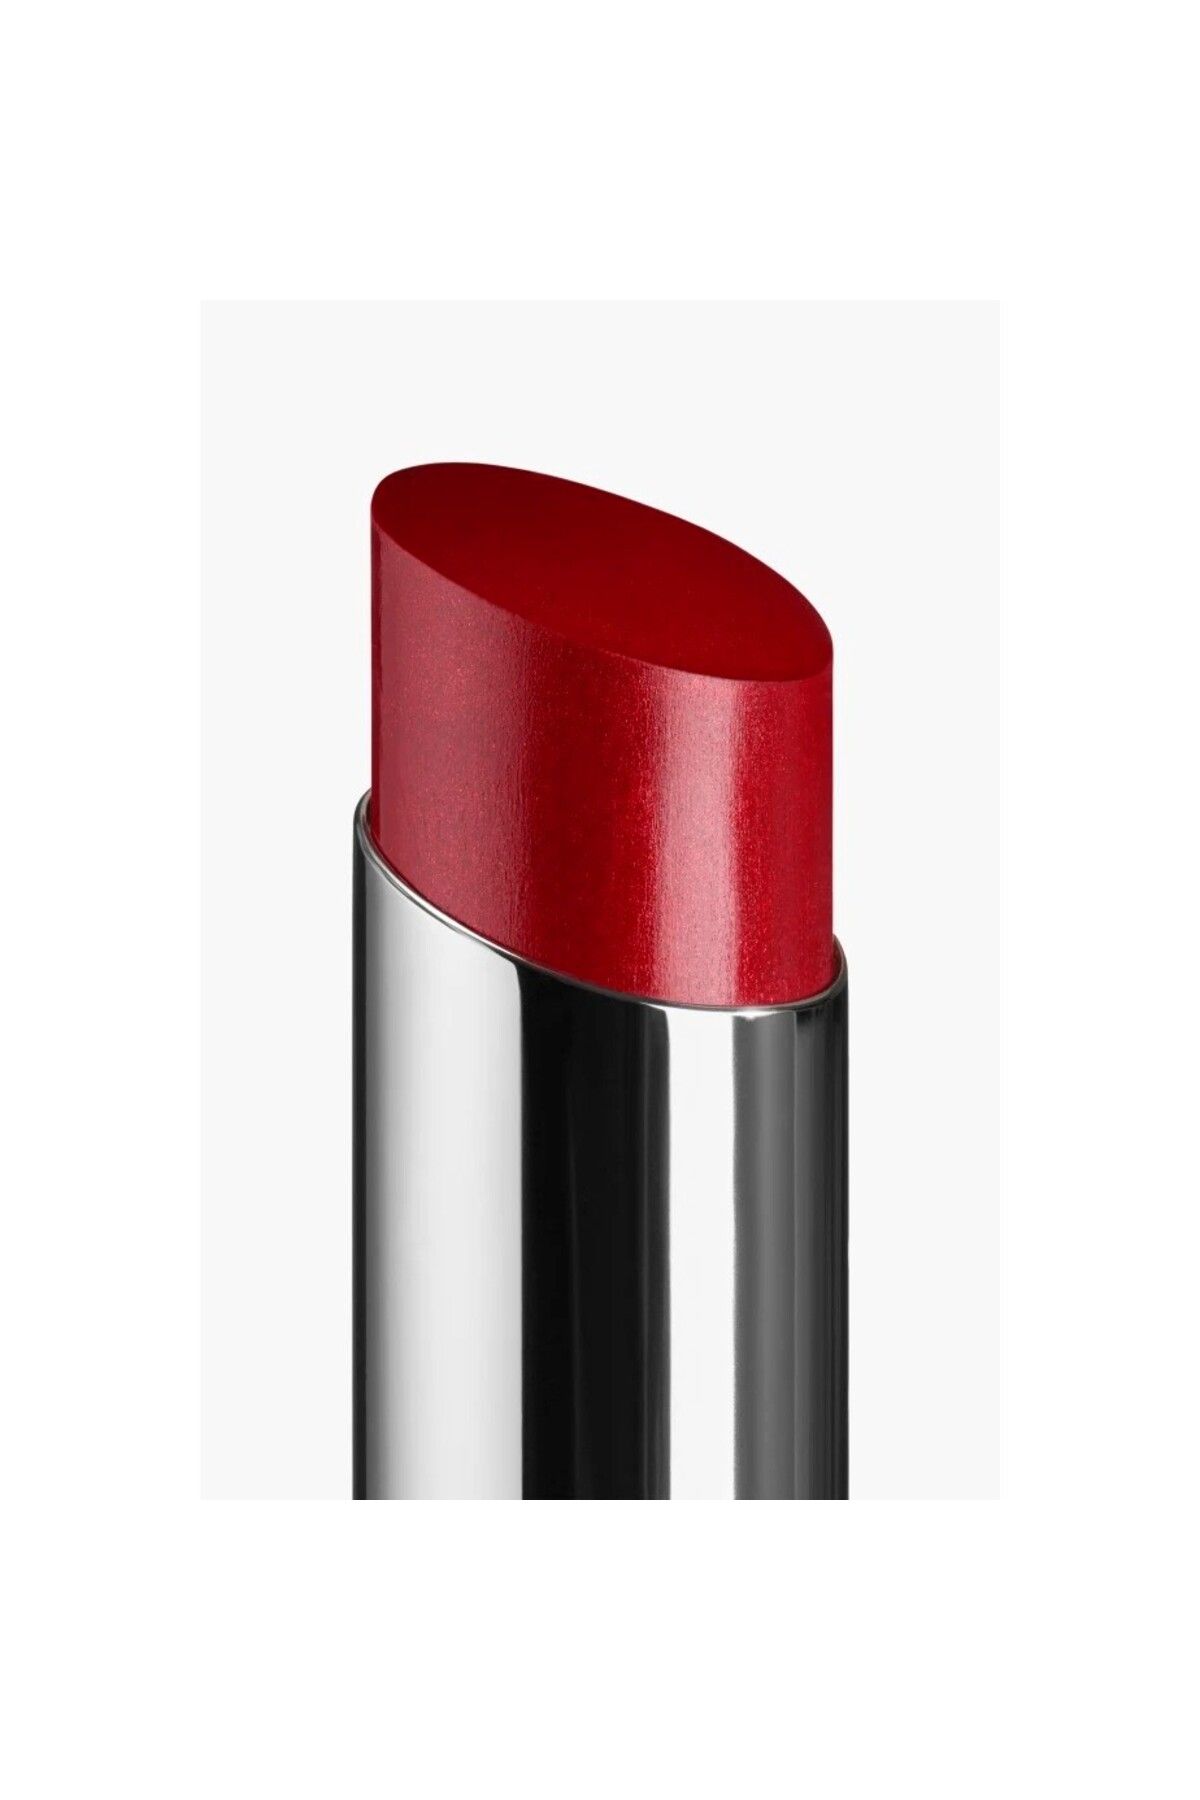 Chanel رژ لب مرطوب کننده، حجیم، قوی، ماندگار و براق COCO BLOOM رنگ قرمز